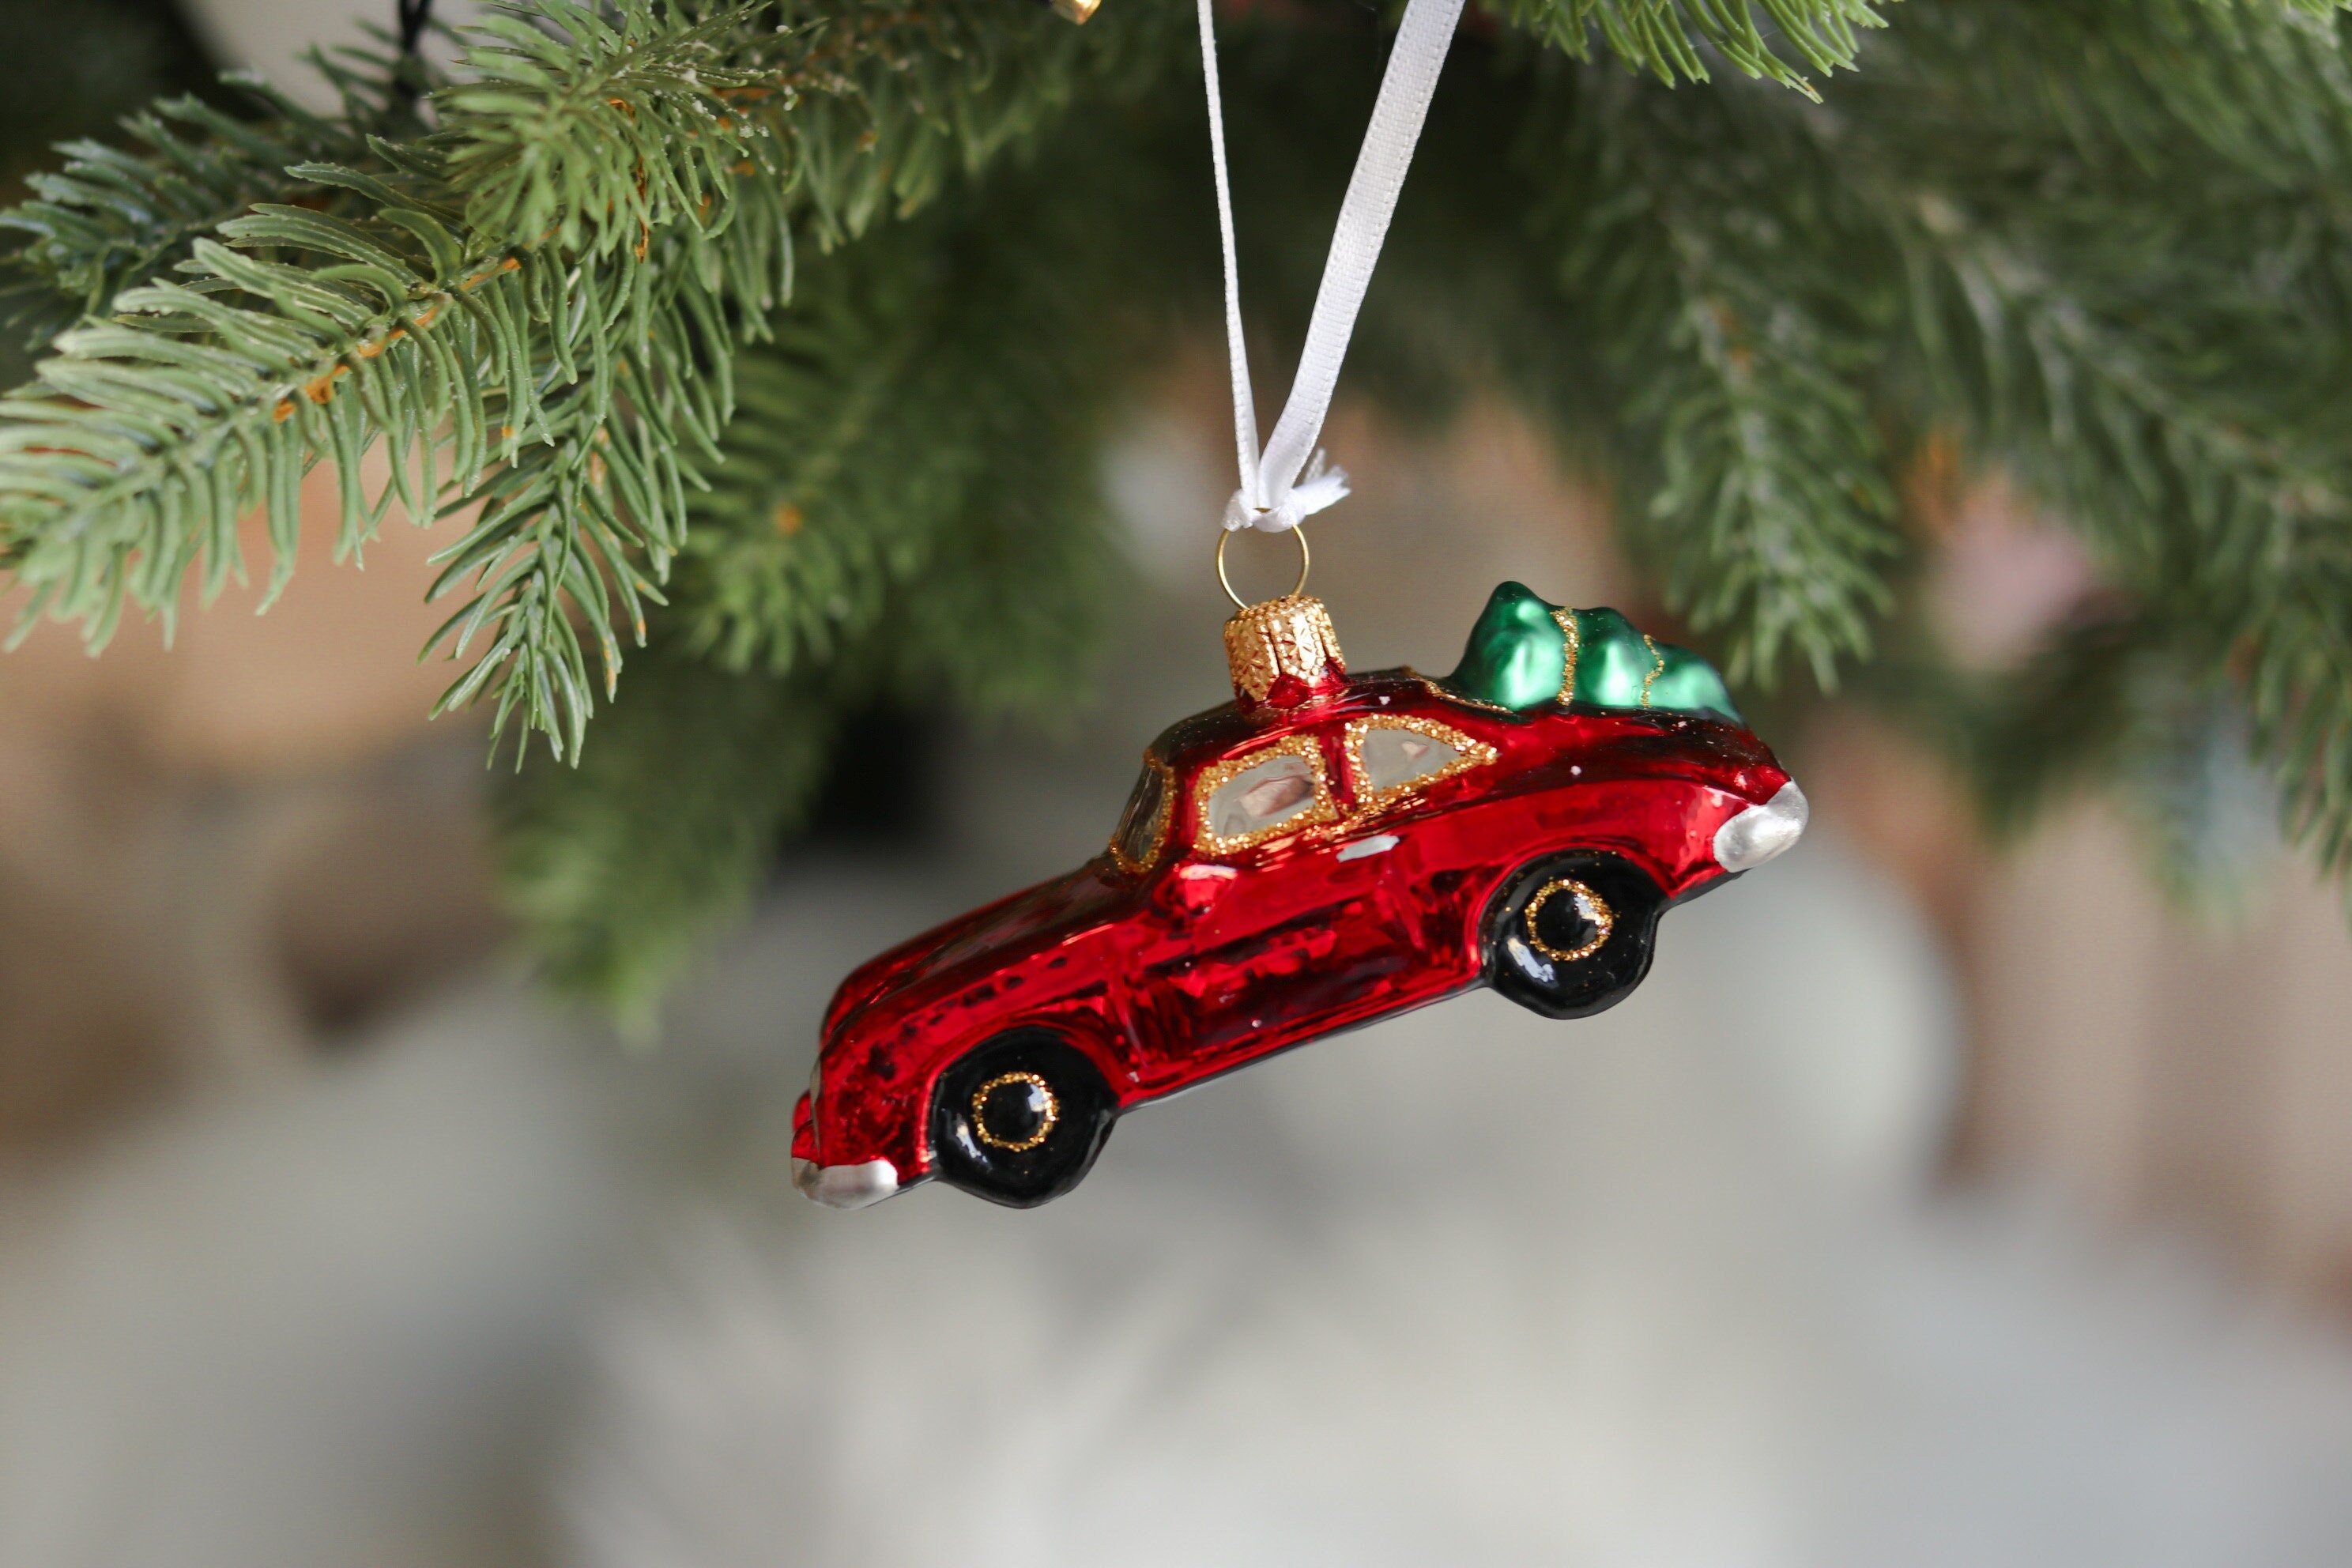 1 Stück Rotes Weihnachtsbaum-förmiges Legierung Auto Innenraum